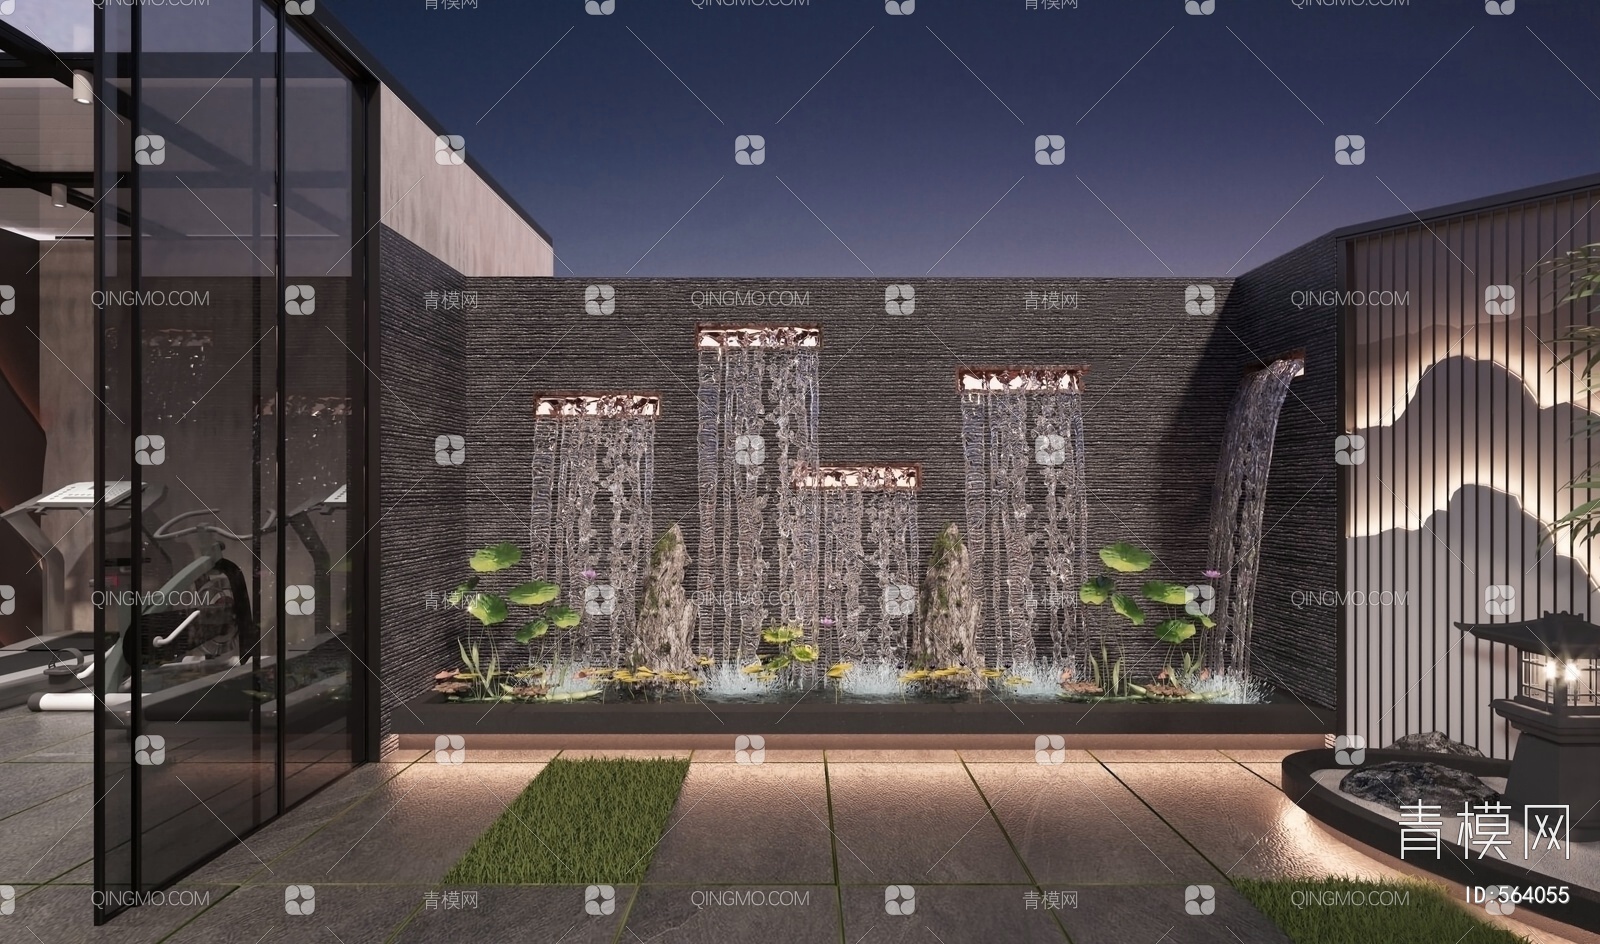 单元式玻璃幕墙的创新设计理念-广东信鼎建设工程有限公司